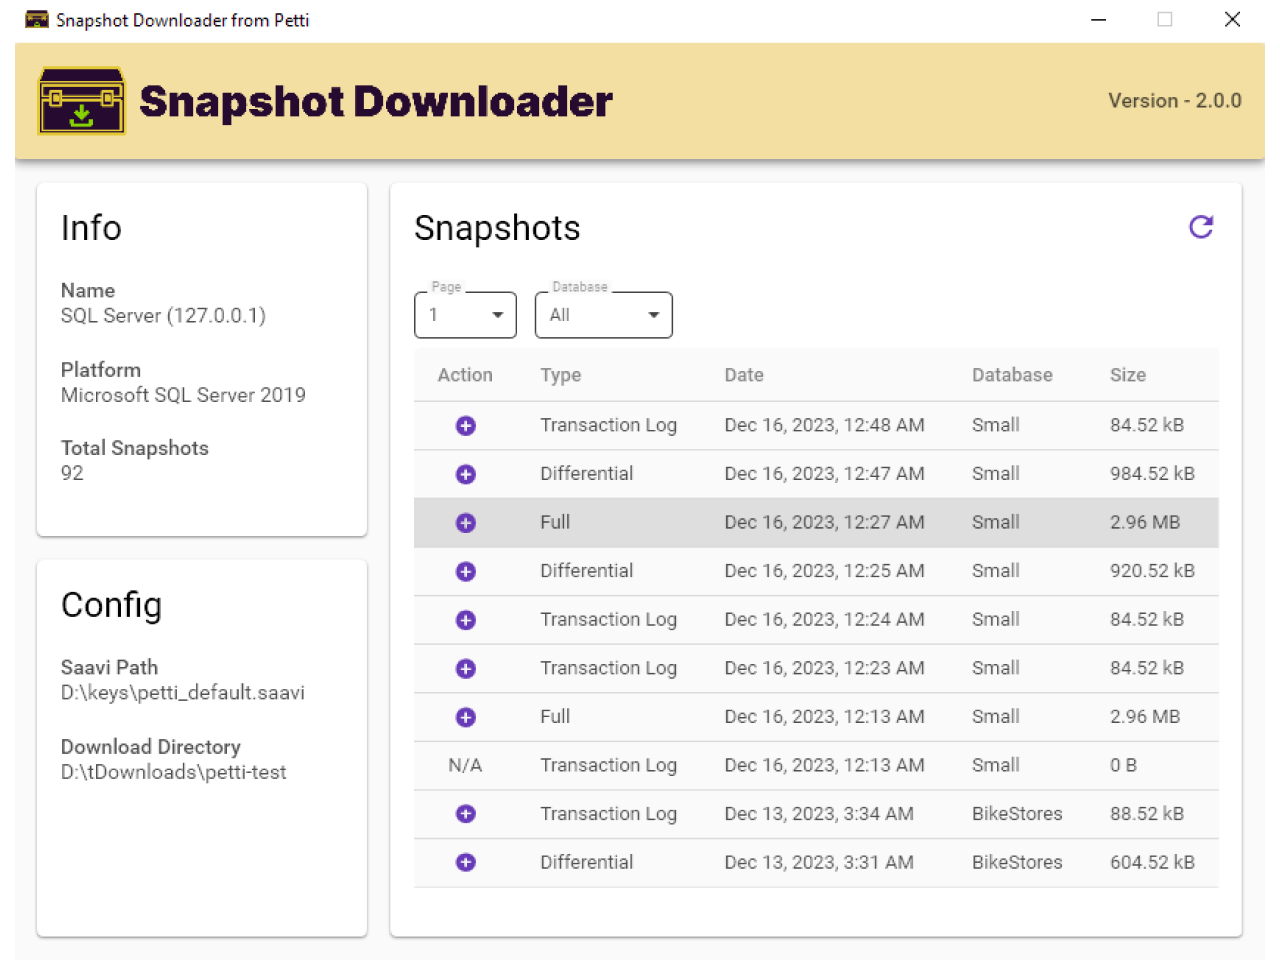 Snapshot Downloader (Windows) - List Snapshots